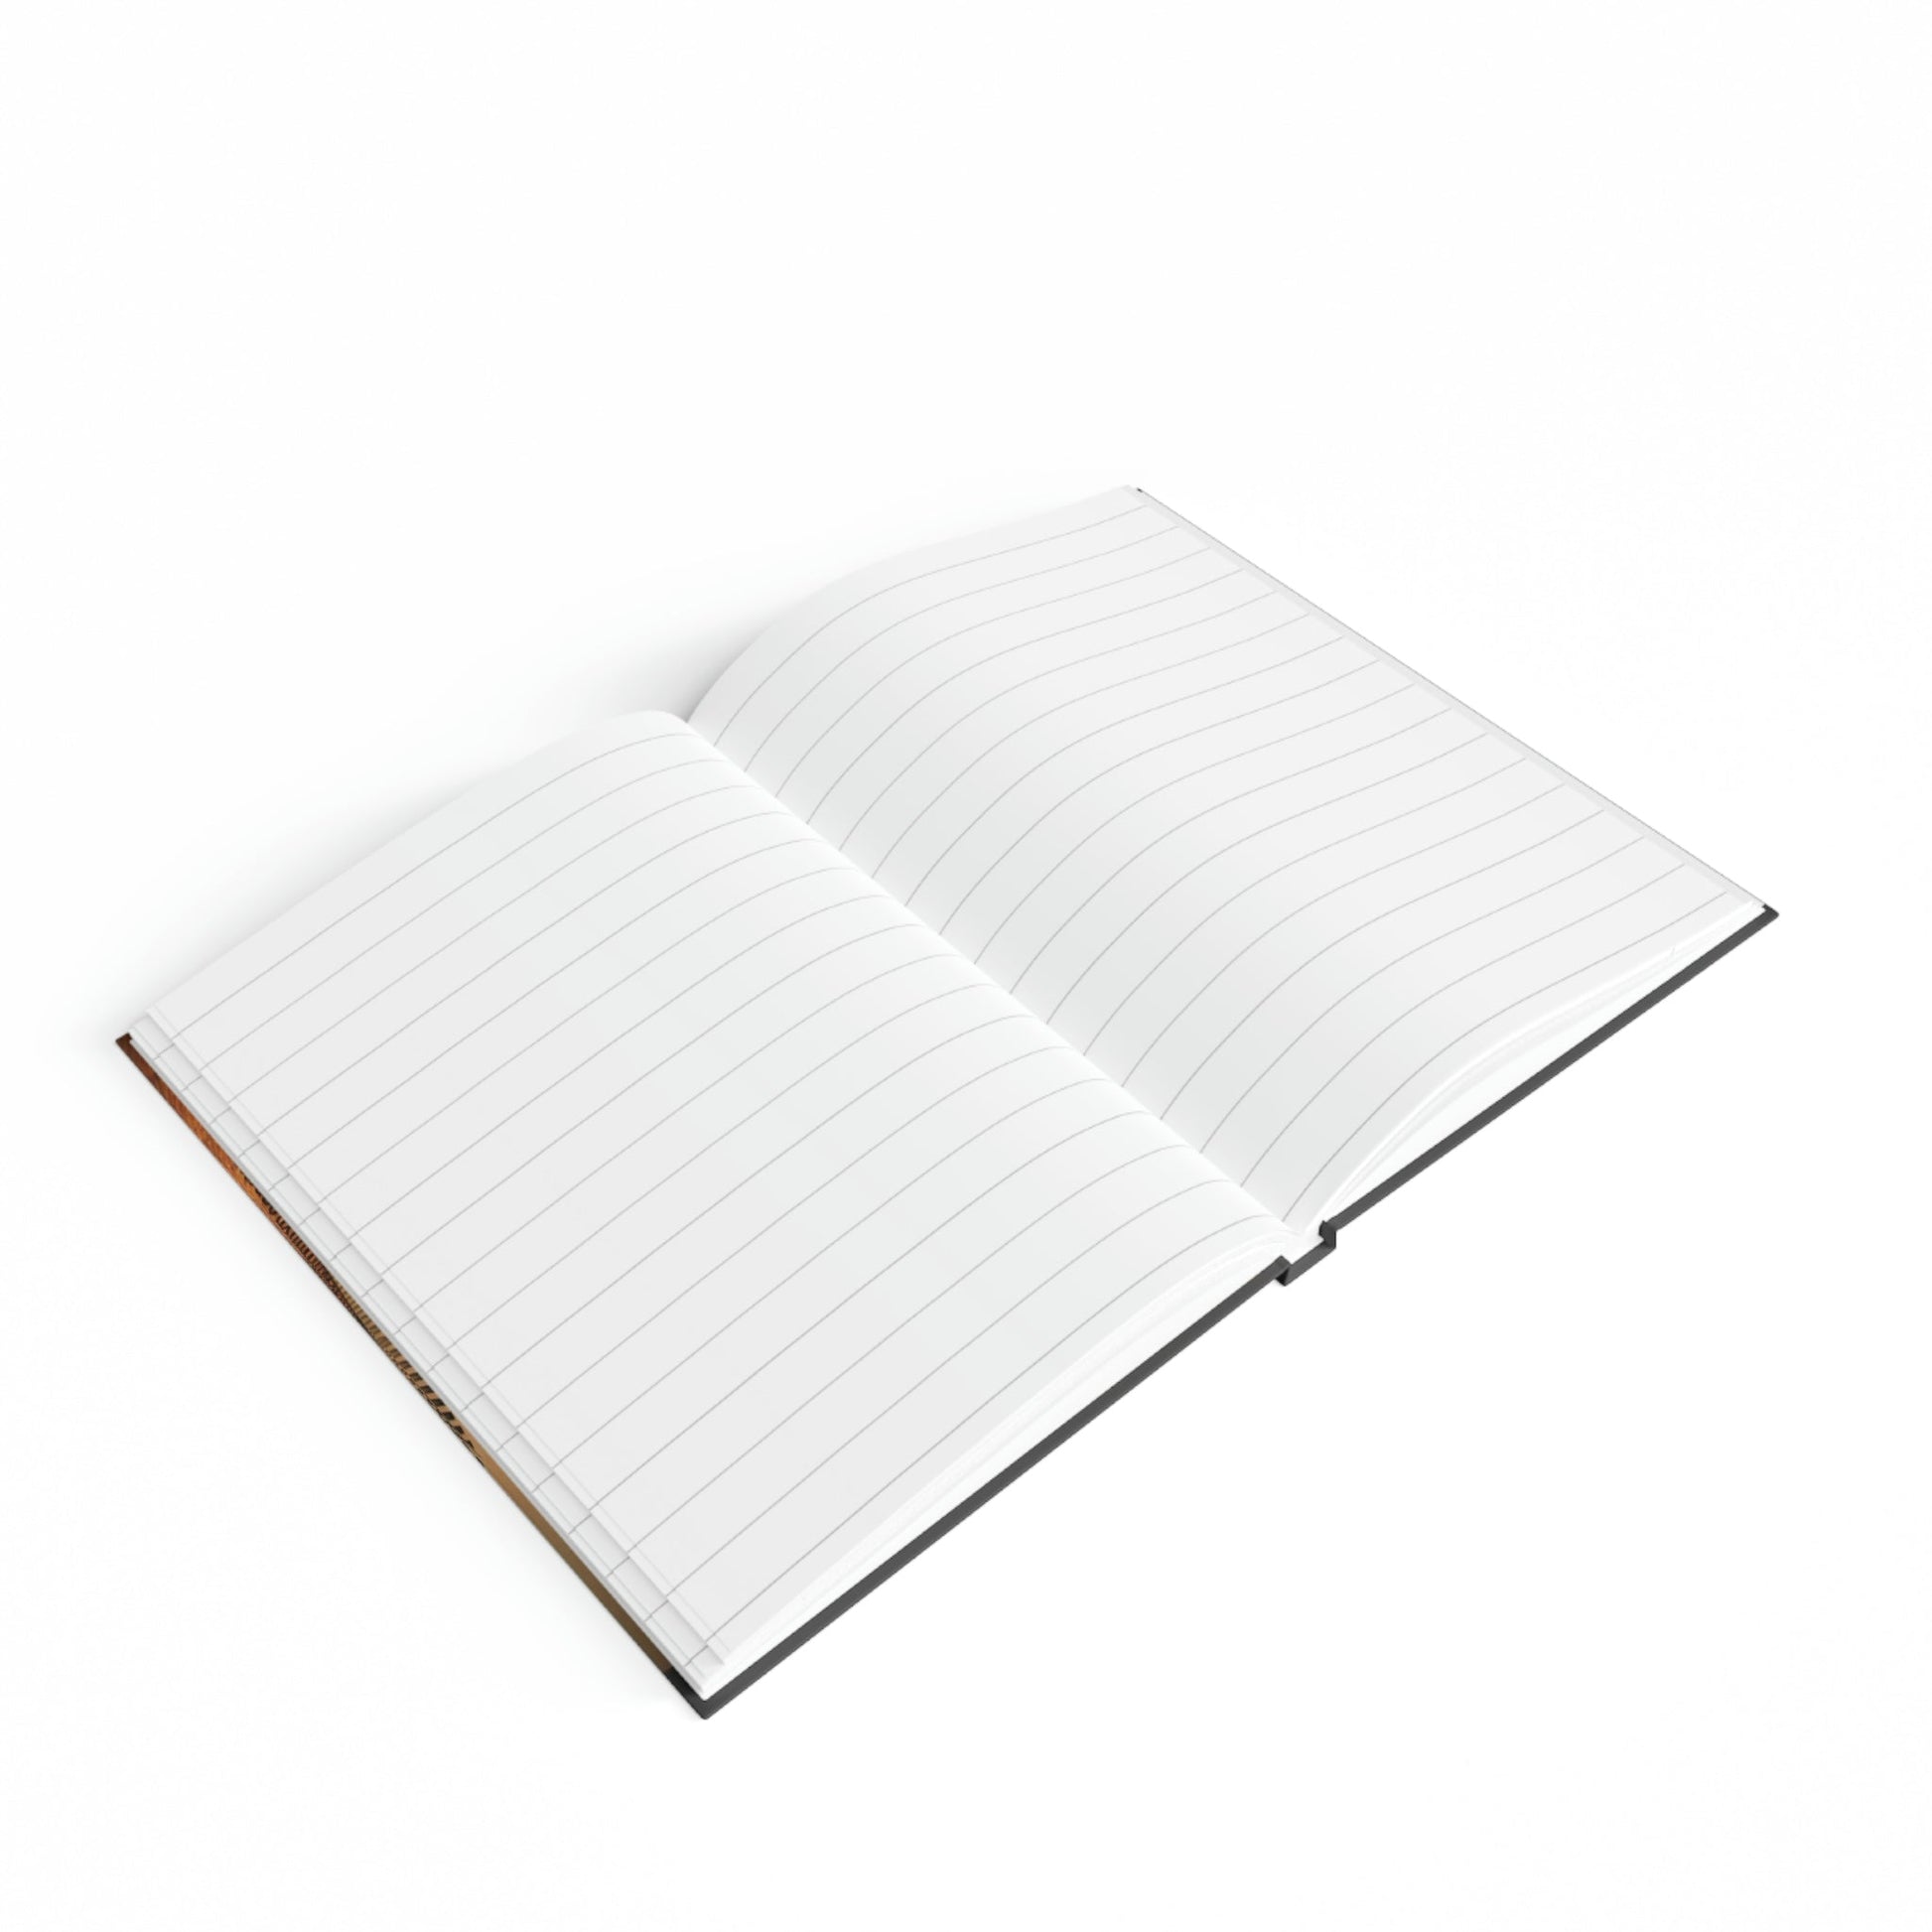 Boy's Sketchbook - Hard Backed Journal